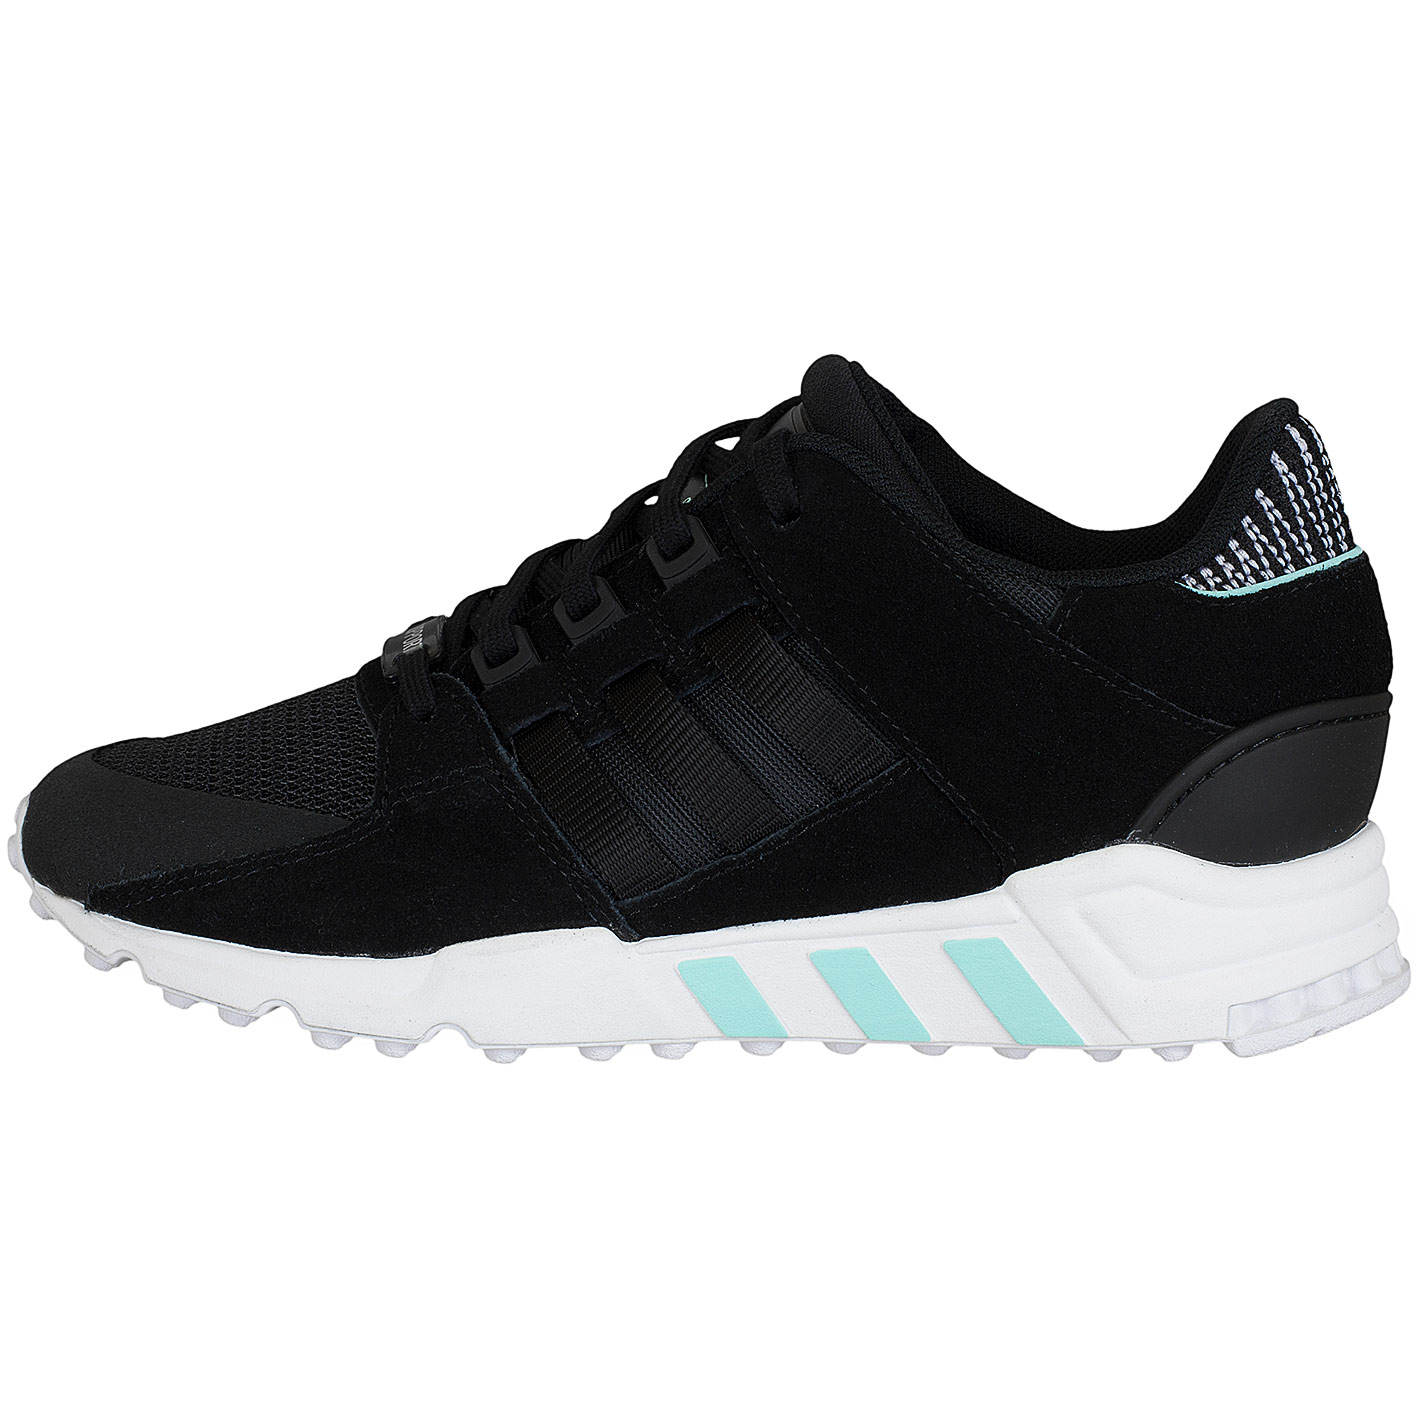 ☆ Adidas Originals Damen Sneaker Equipment Support RF schwarz/schwarz/weiß  - hier bestellen!